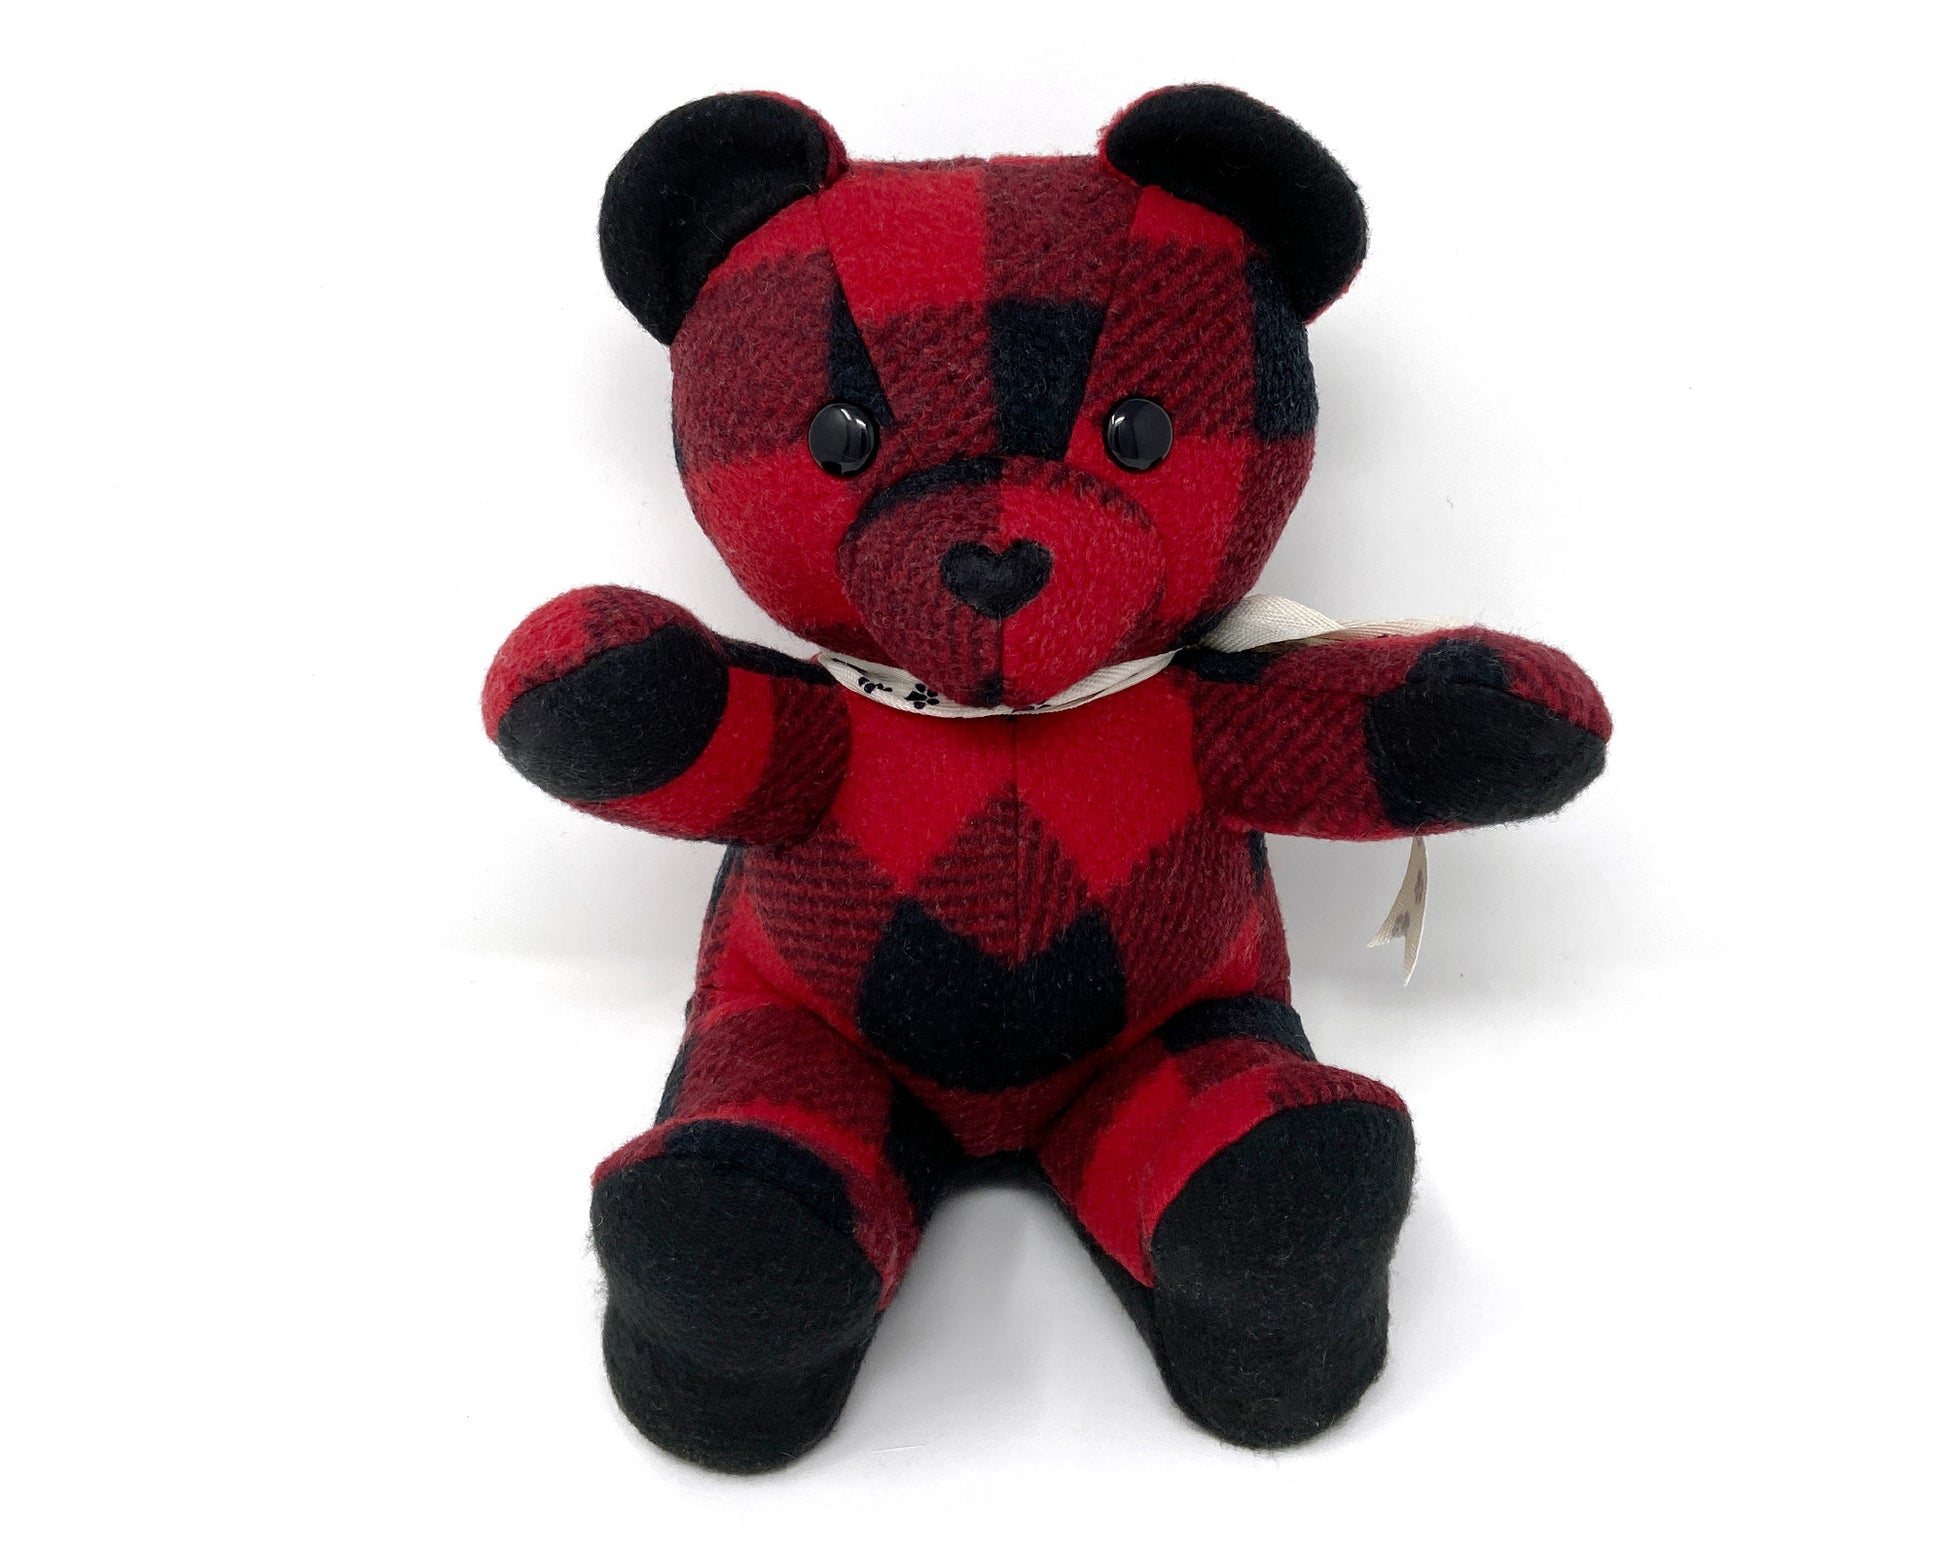 Pet Memorial Teddy Bear Nestling Kids Keepsakes